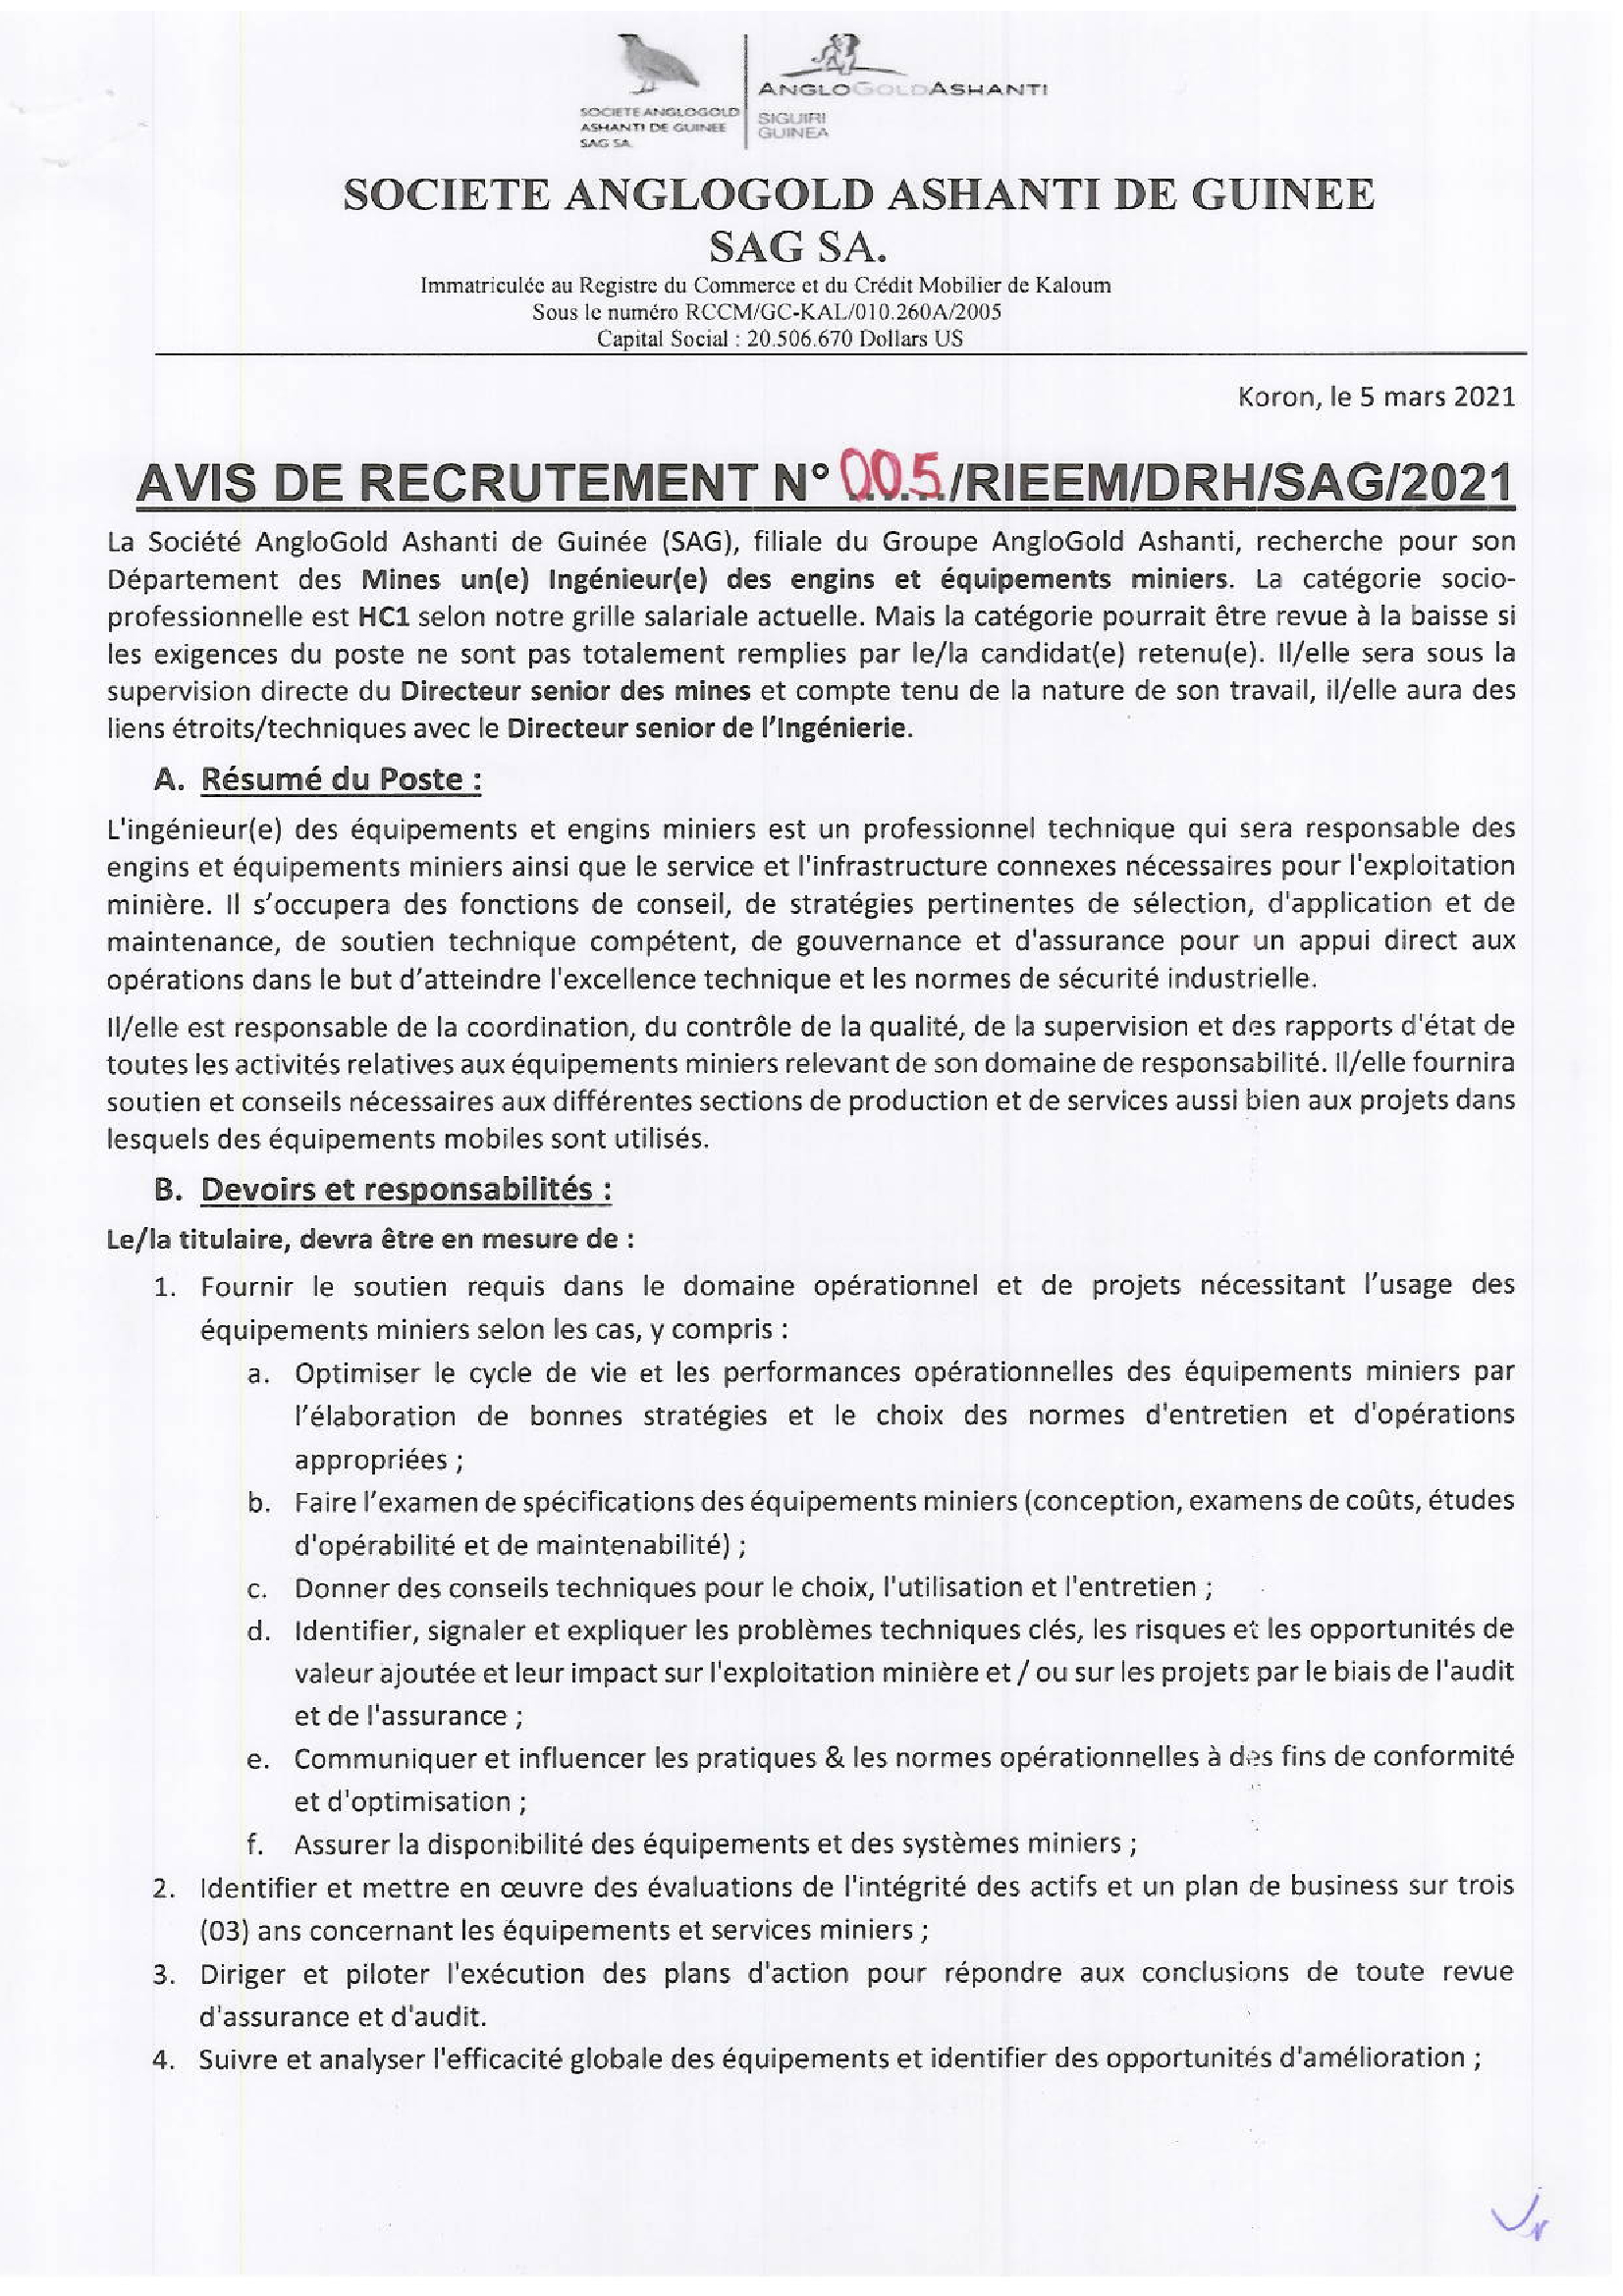 offre d'emploi en guinée - recrutement CRS p1